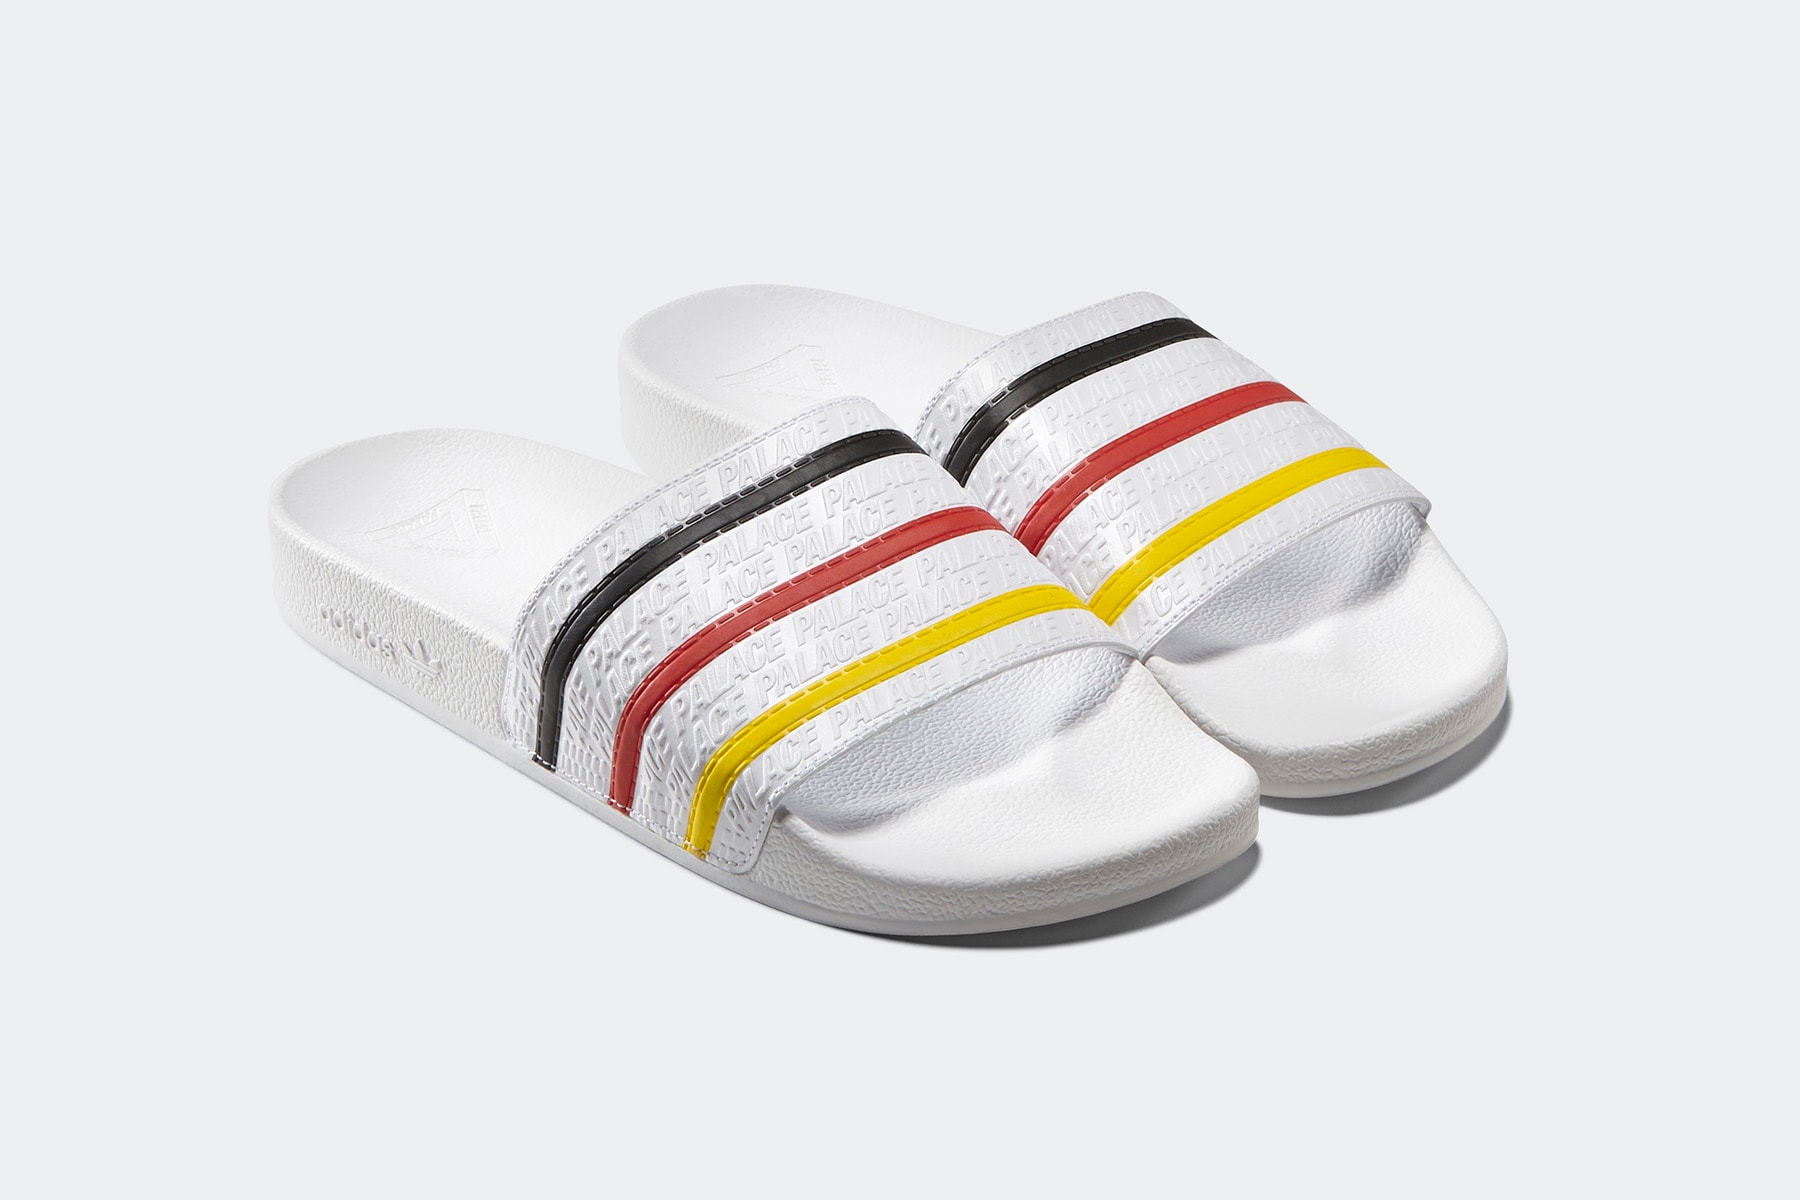 업데이트: 팔라스 x 아디다스 오리지널스 2018 봄, 여름 룩북 & 전 제품군 palace adidas originals spring summer